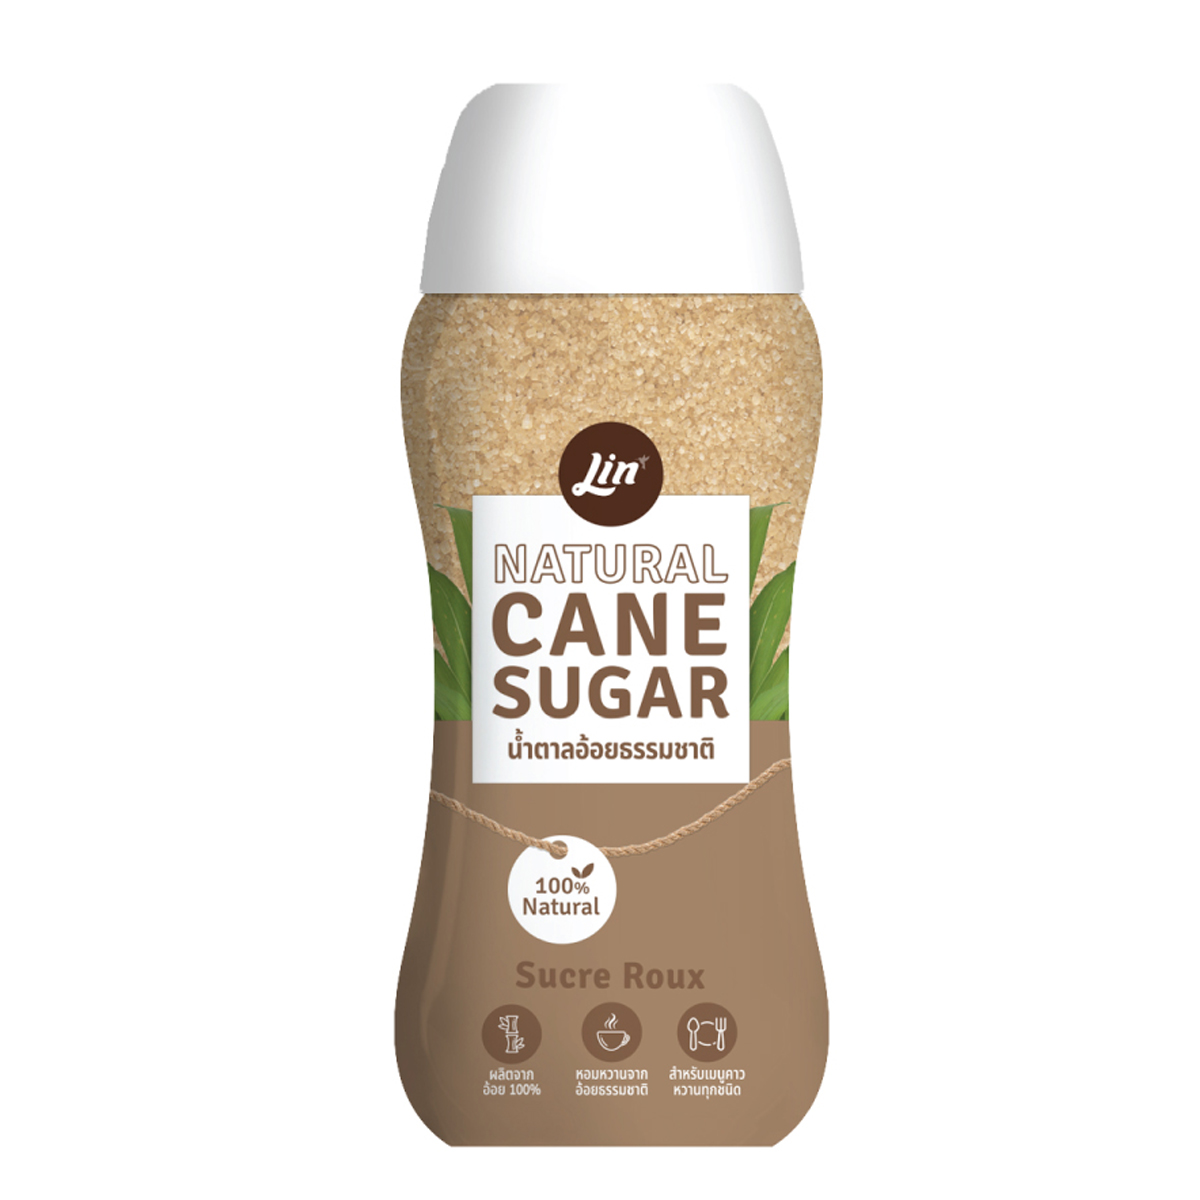 ลิน น้ำตาลทรายธรรมชาติ ชนิดขวด (Cane Natural Sugar)